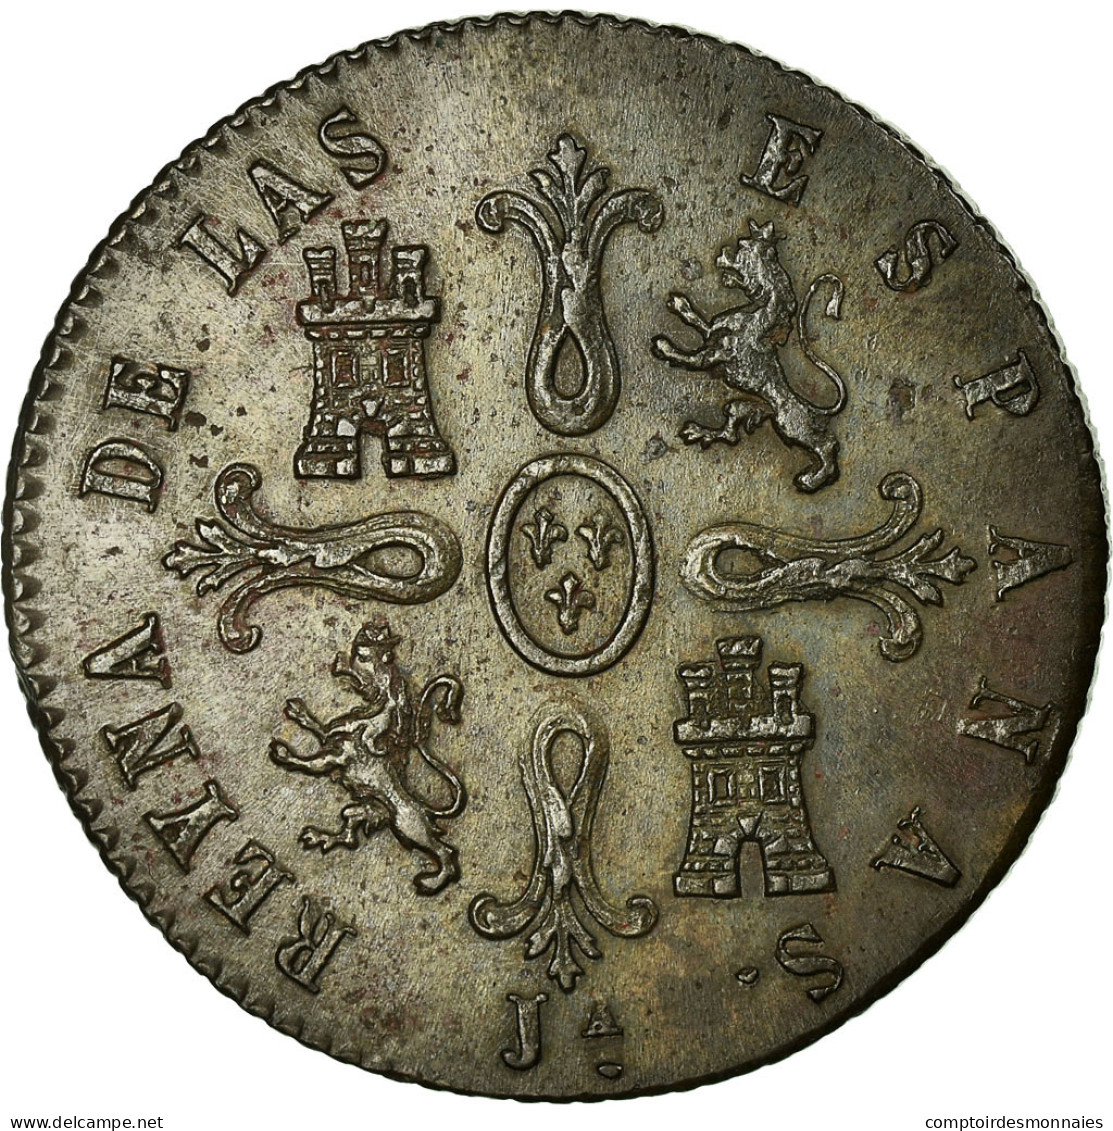 Monnaie, Espagne, Isabel II, 8 Maravedis, 1848, Jubia, SUP, Cuivre, KM:531.2 - Premières Frappes